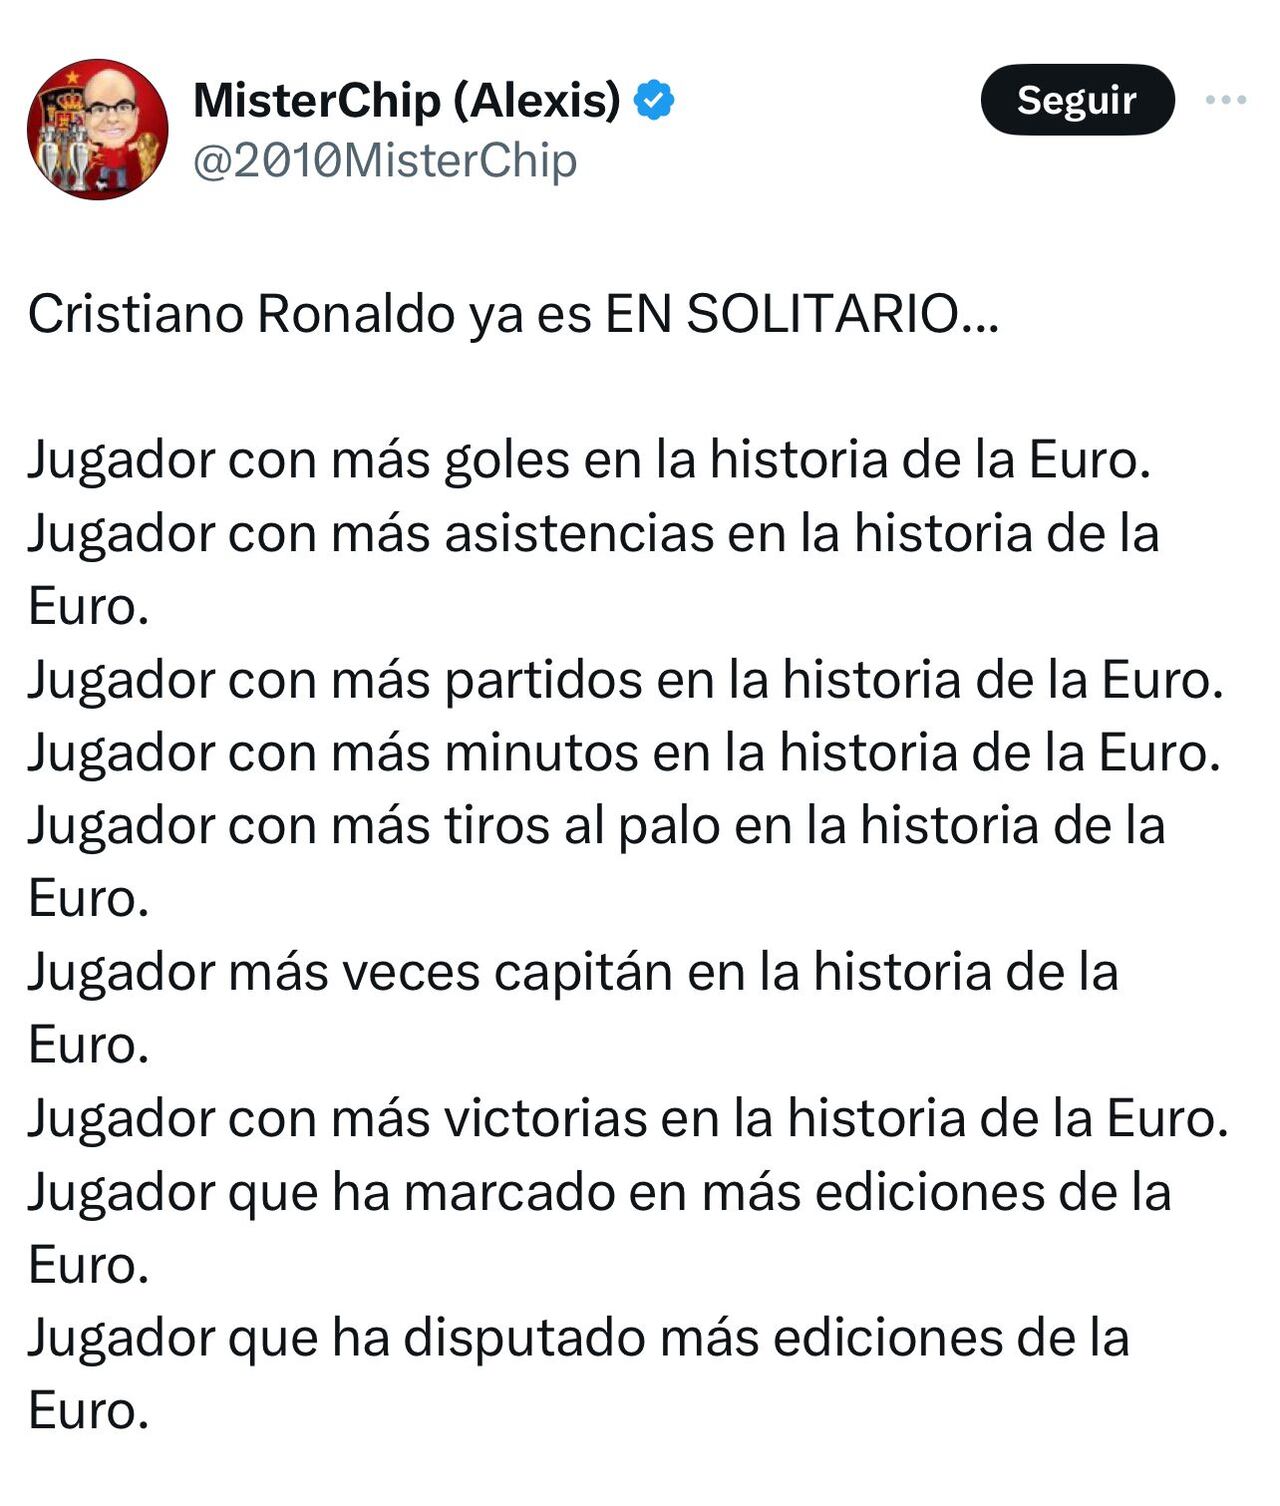 Según el estadista MisterChip, estos son los récords en solitario de Cristiano Ronaldo en la Eurocopa.